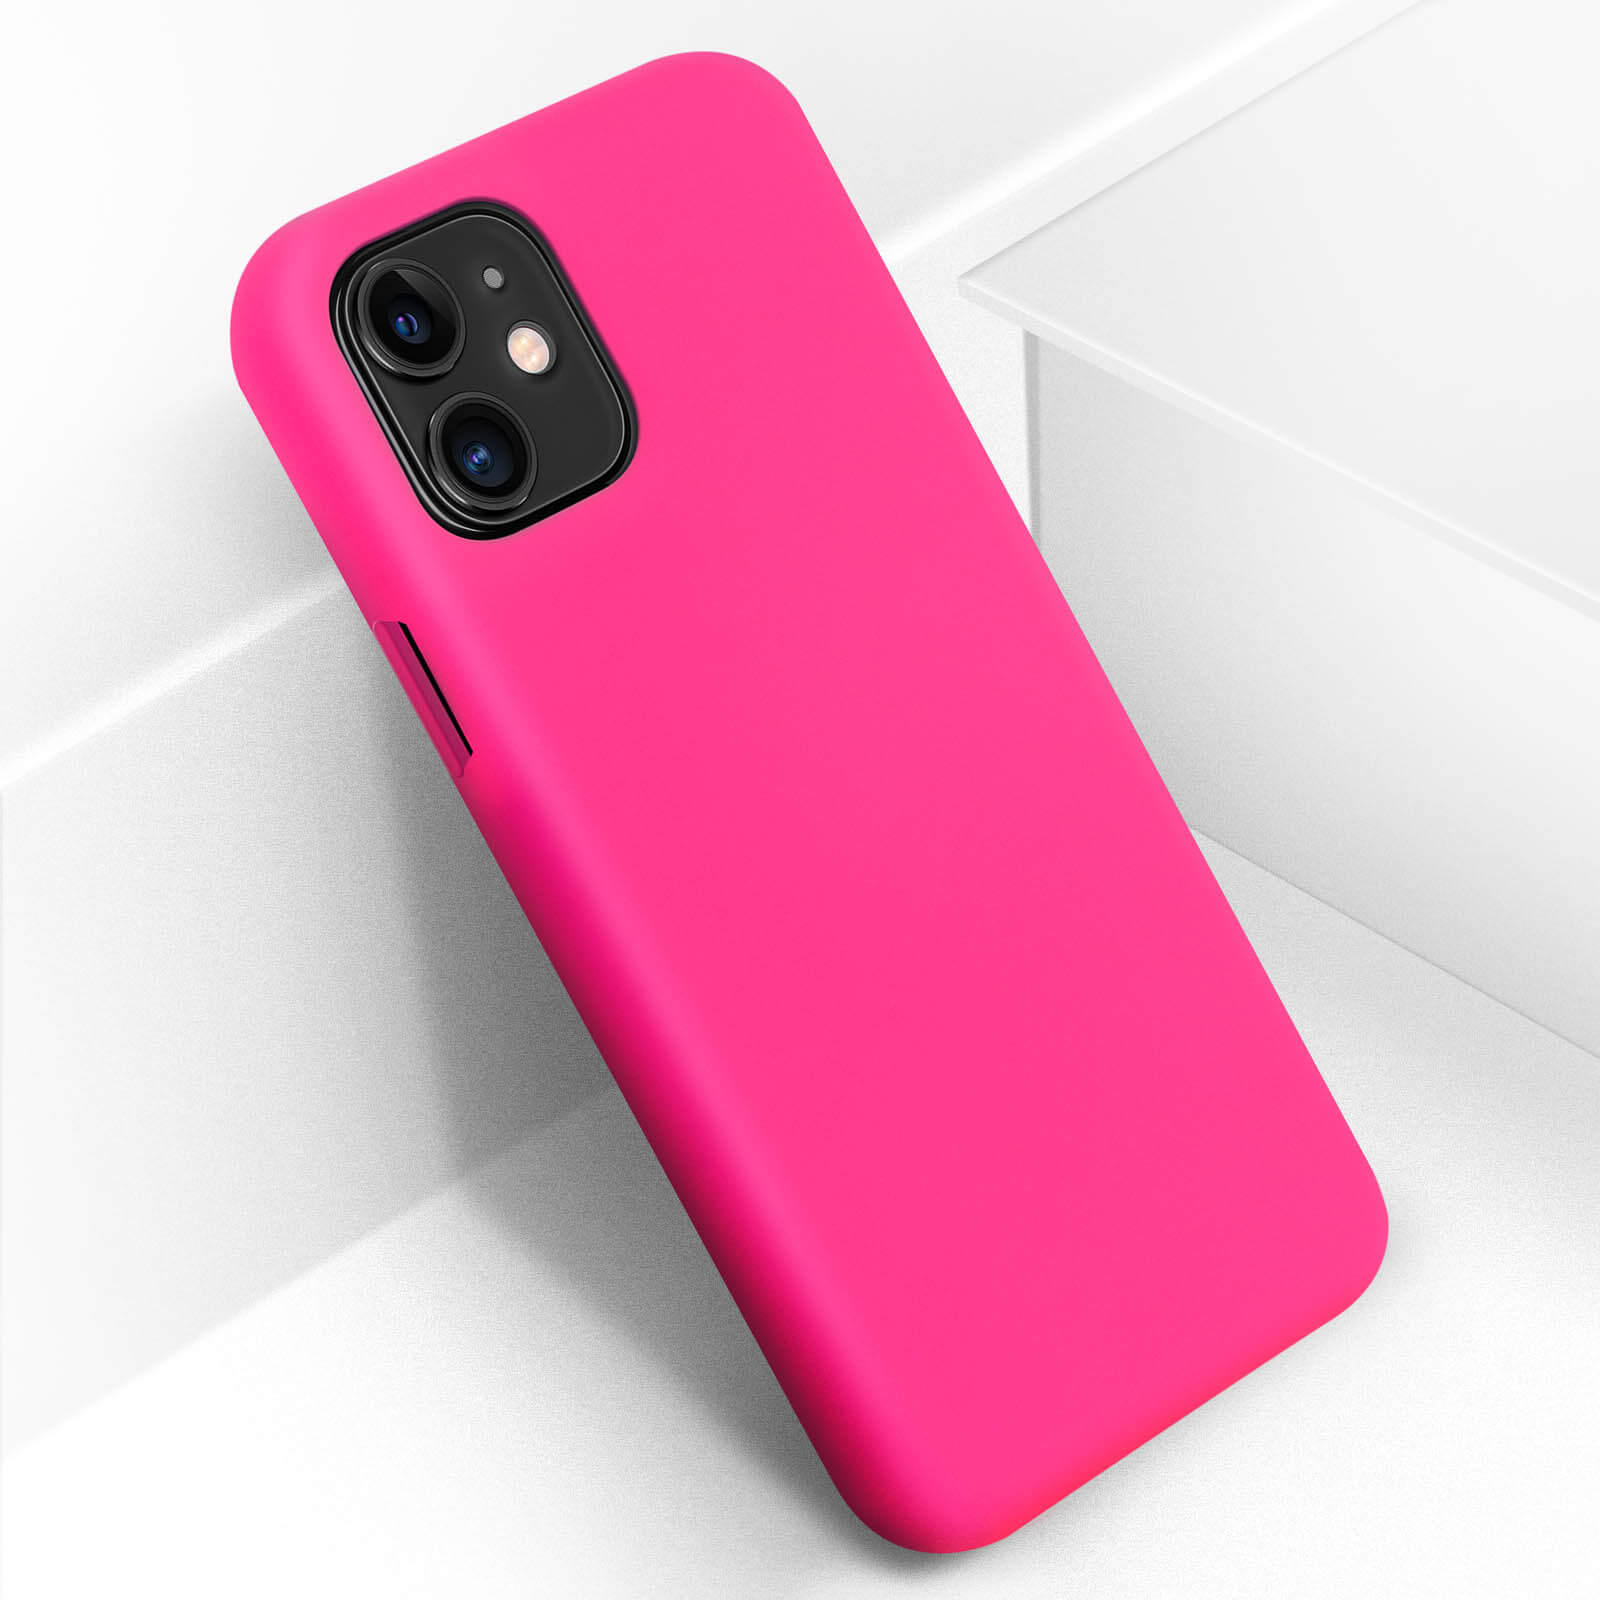 Coque de protection iphone 5/5S/SE silicone rose fluo, neuve - Petit Studio